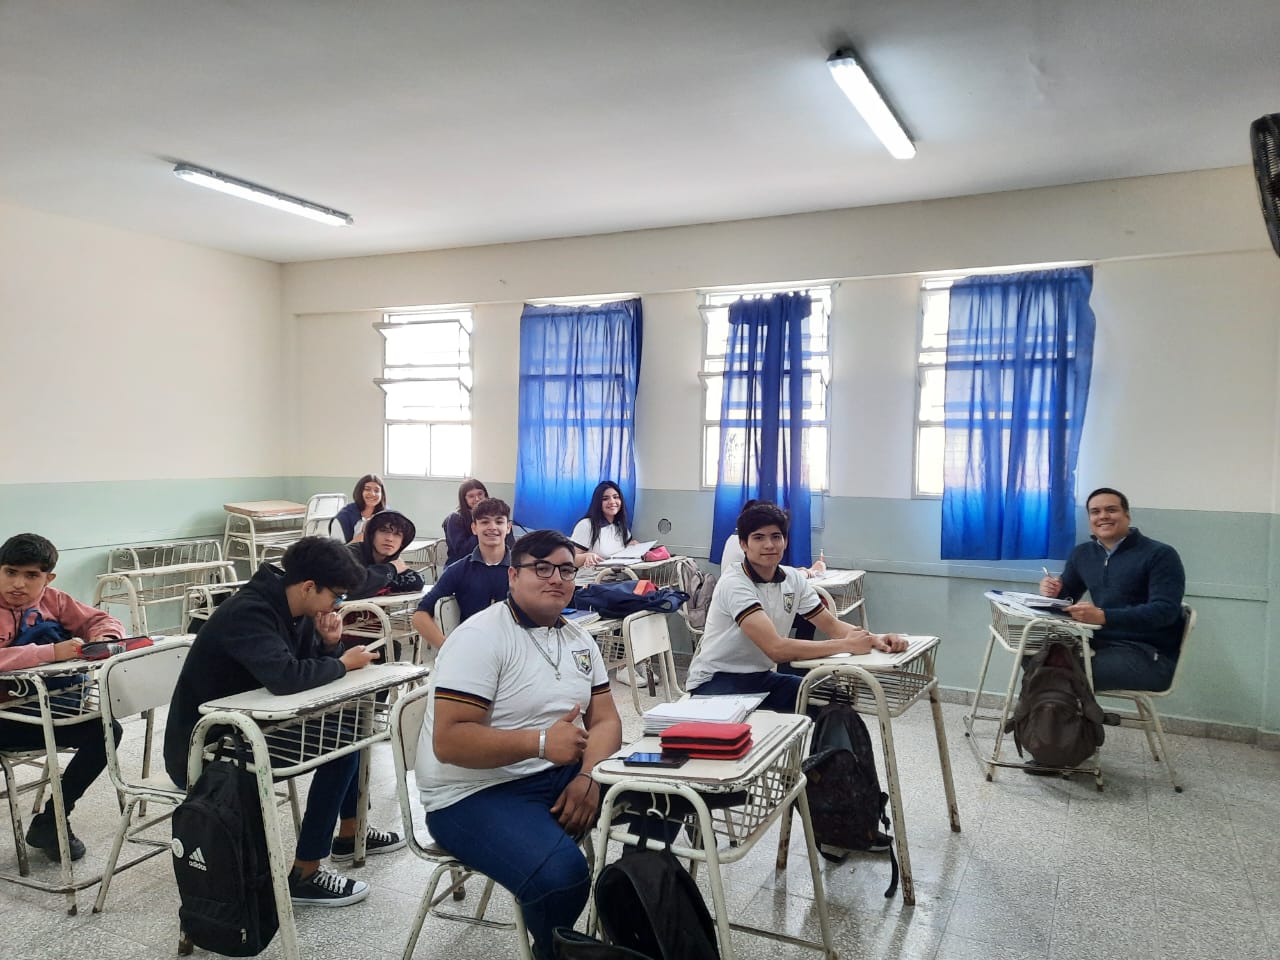 La Escuela Secundaria N64 Gdor. Juan Manuel Salas volvio a abrir las puertas a sus alumnos3